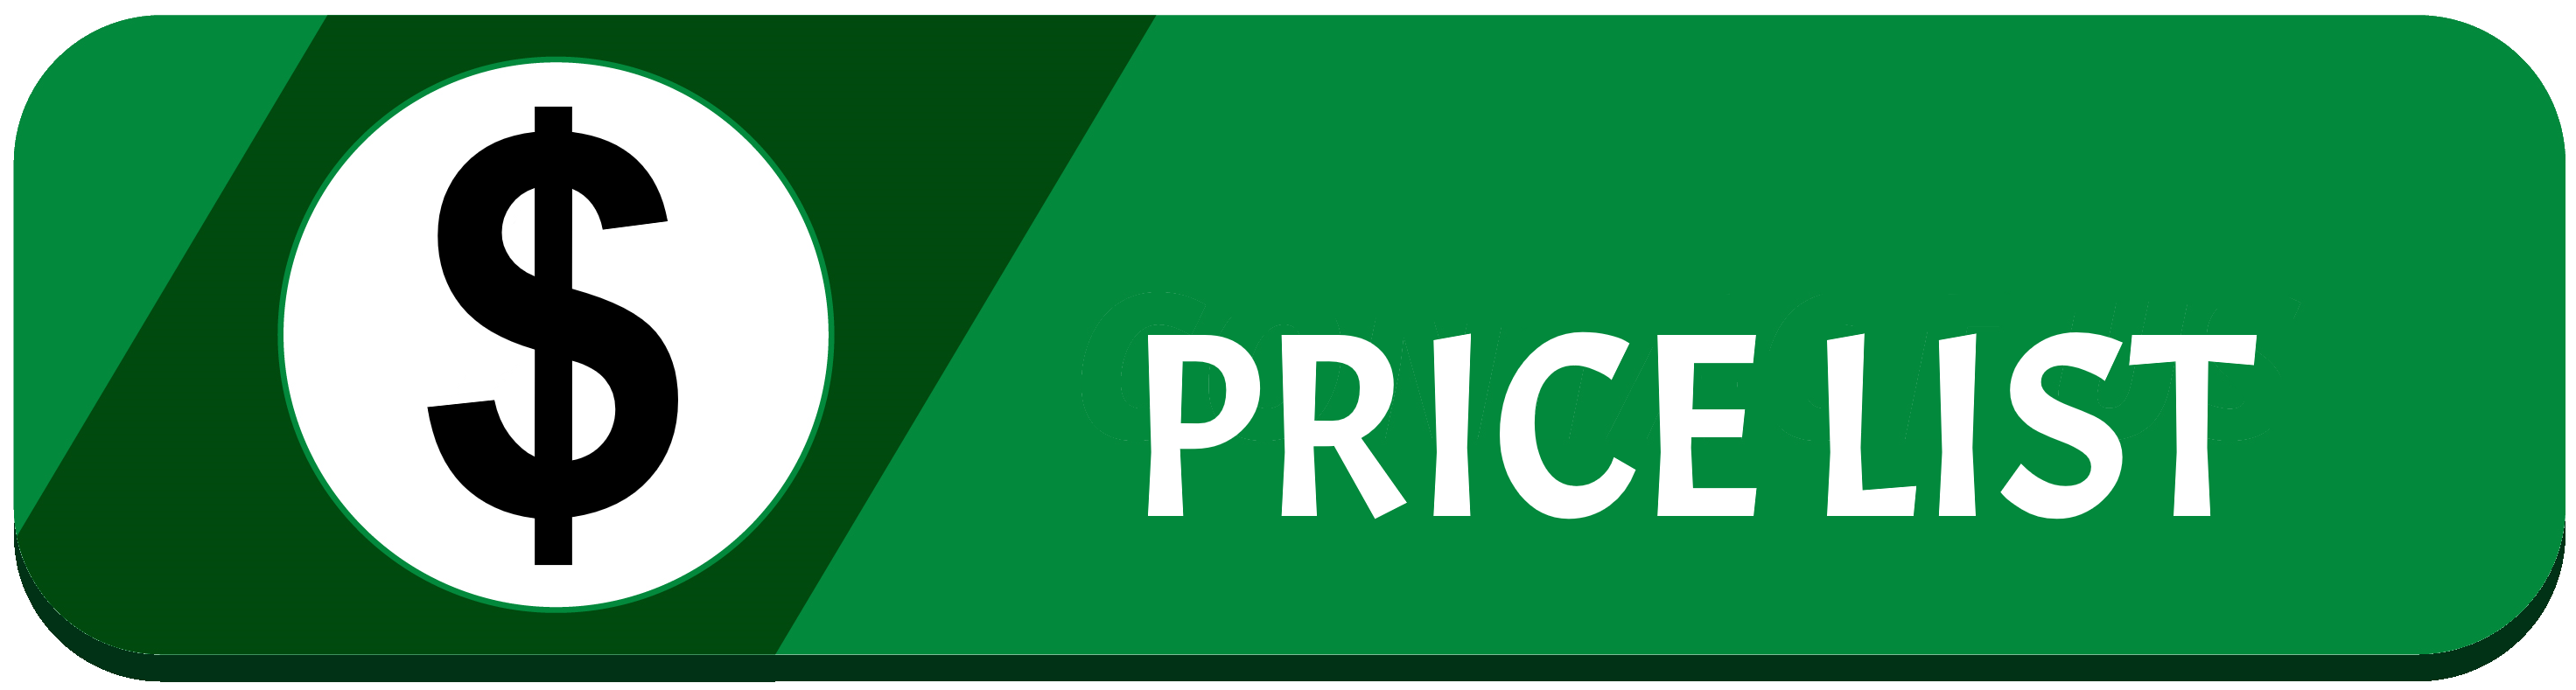 Price List Button